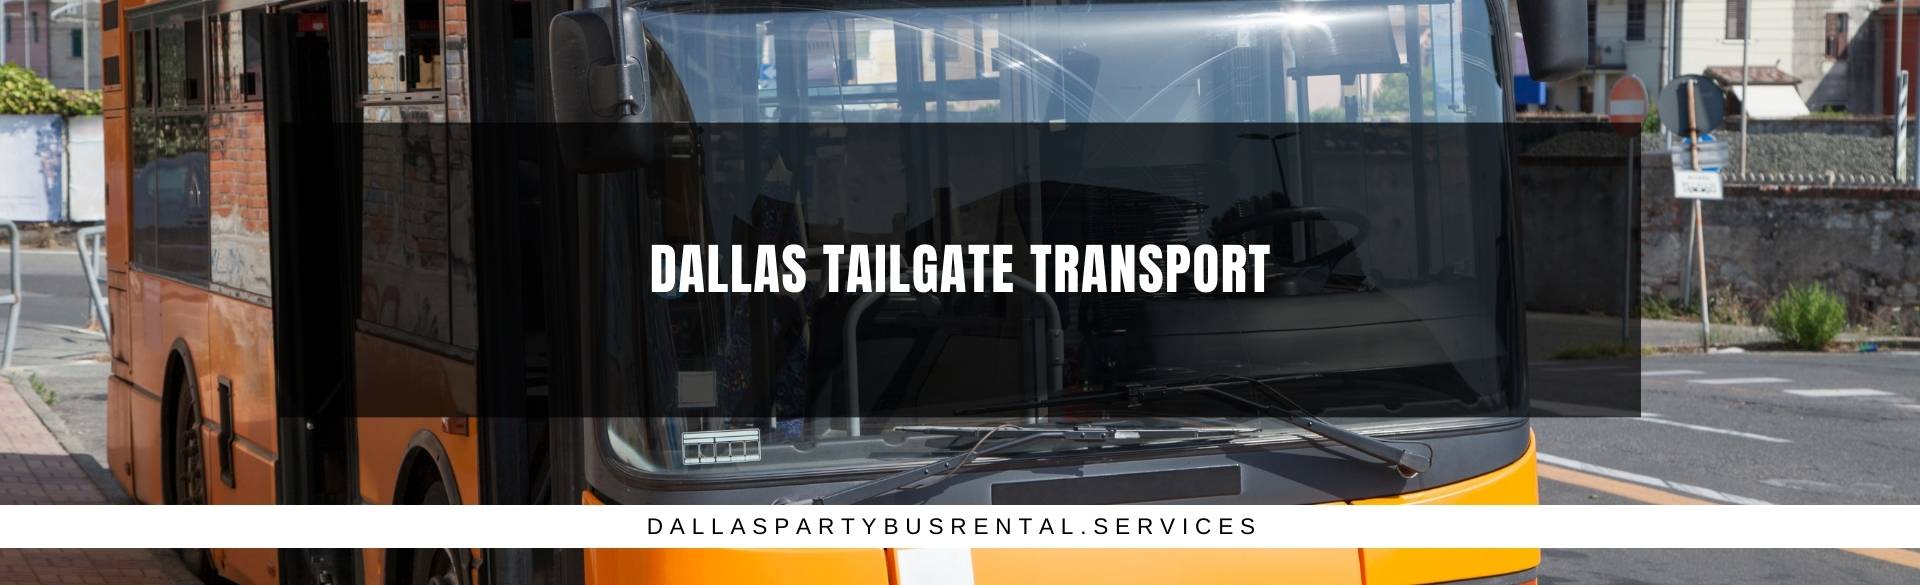 Dallas Tailgate Transport